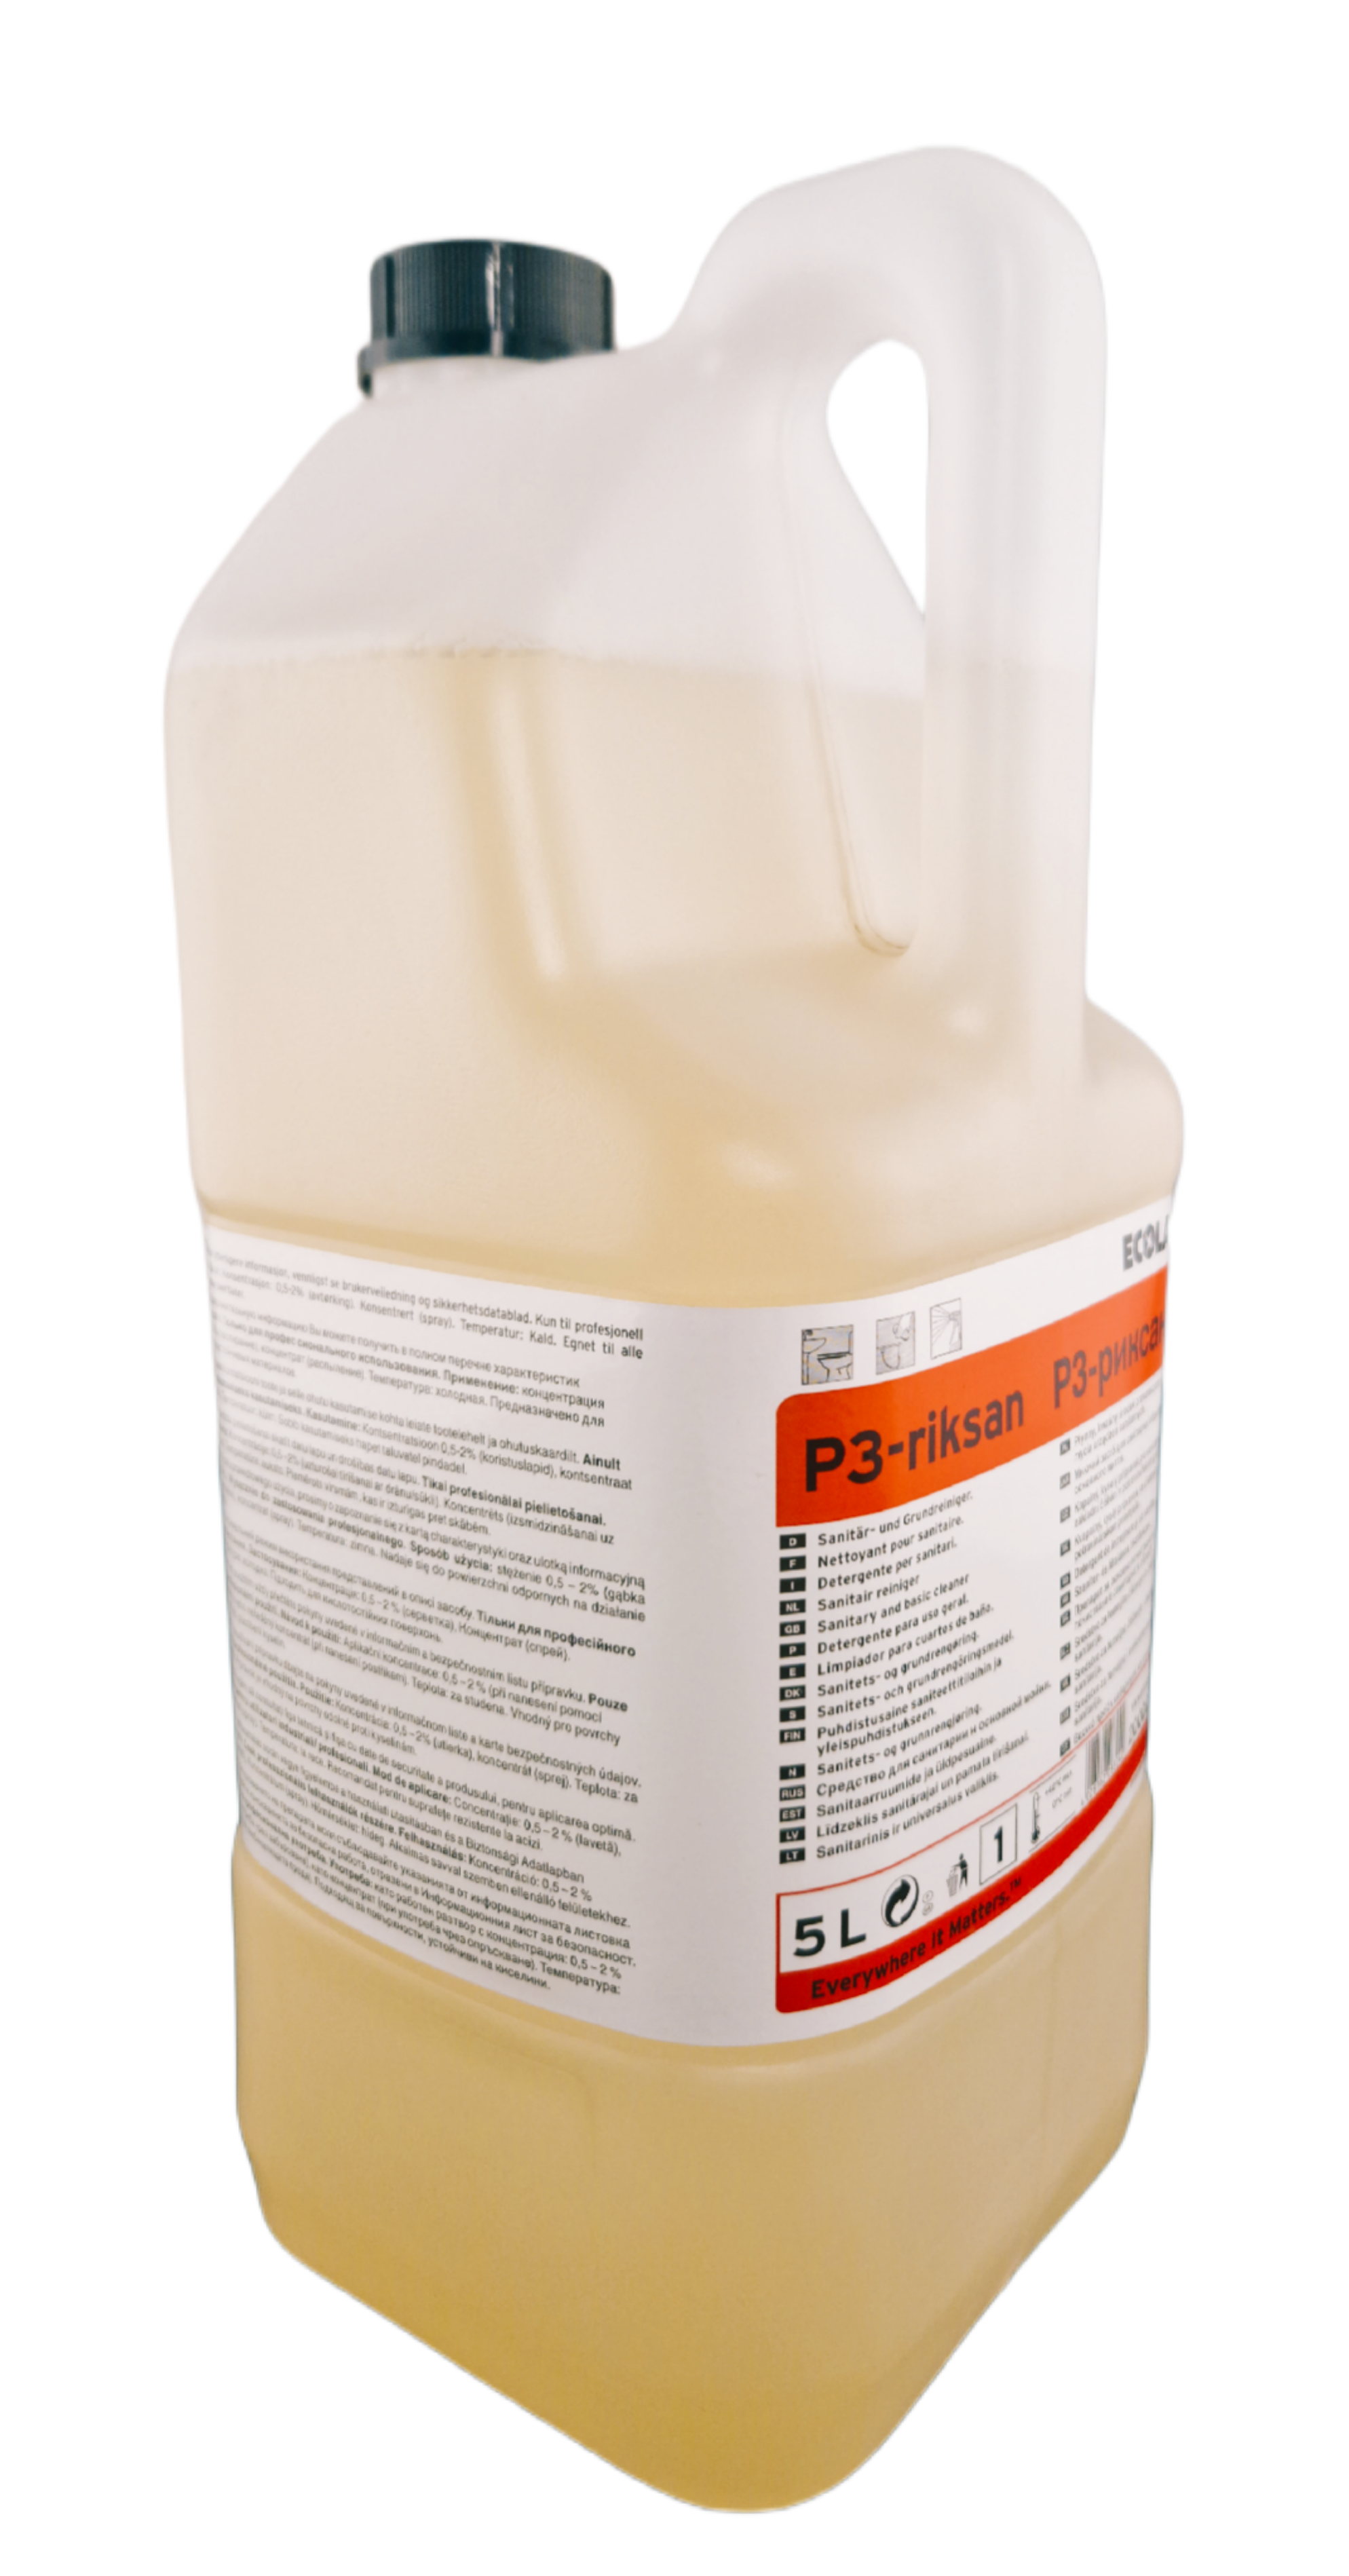 Ecolab - P3 Riksan® Sanitär- und Grundreiniger 5 Liter